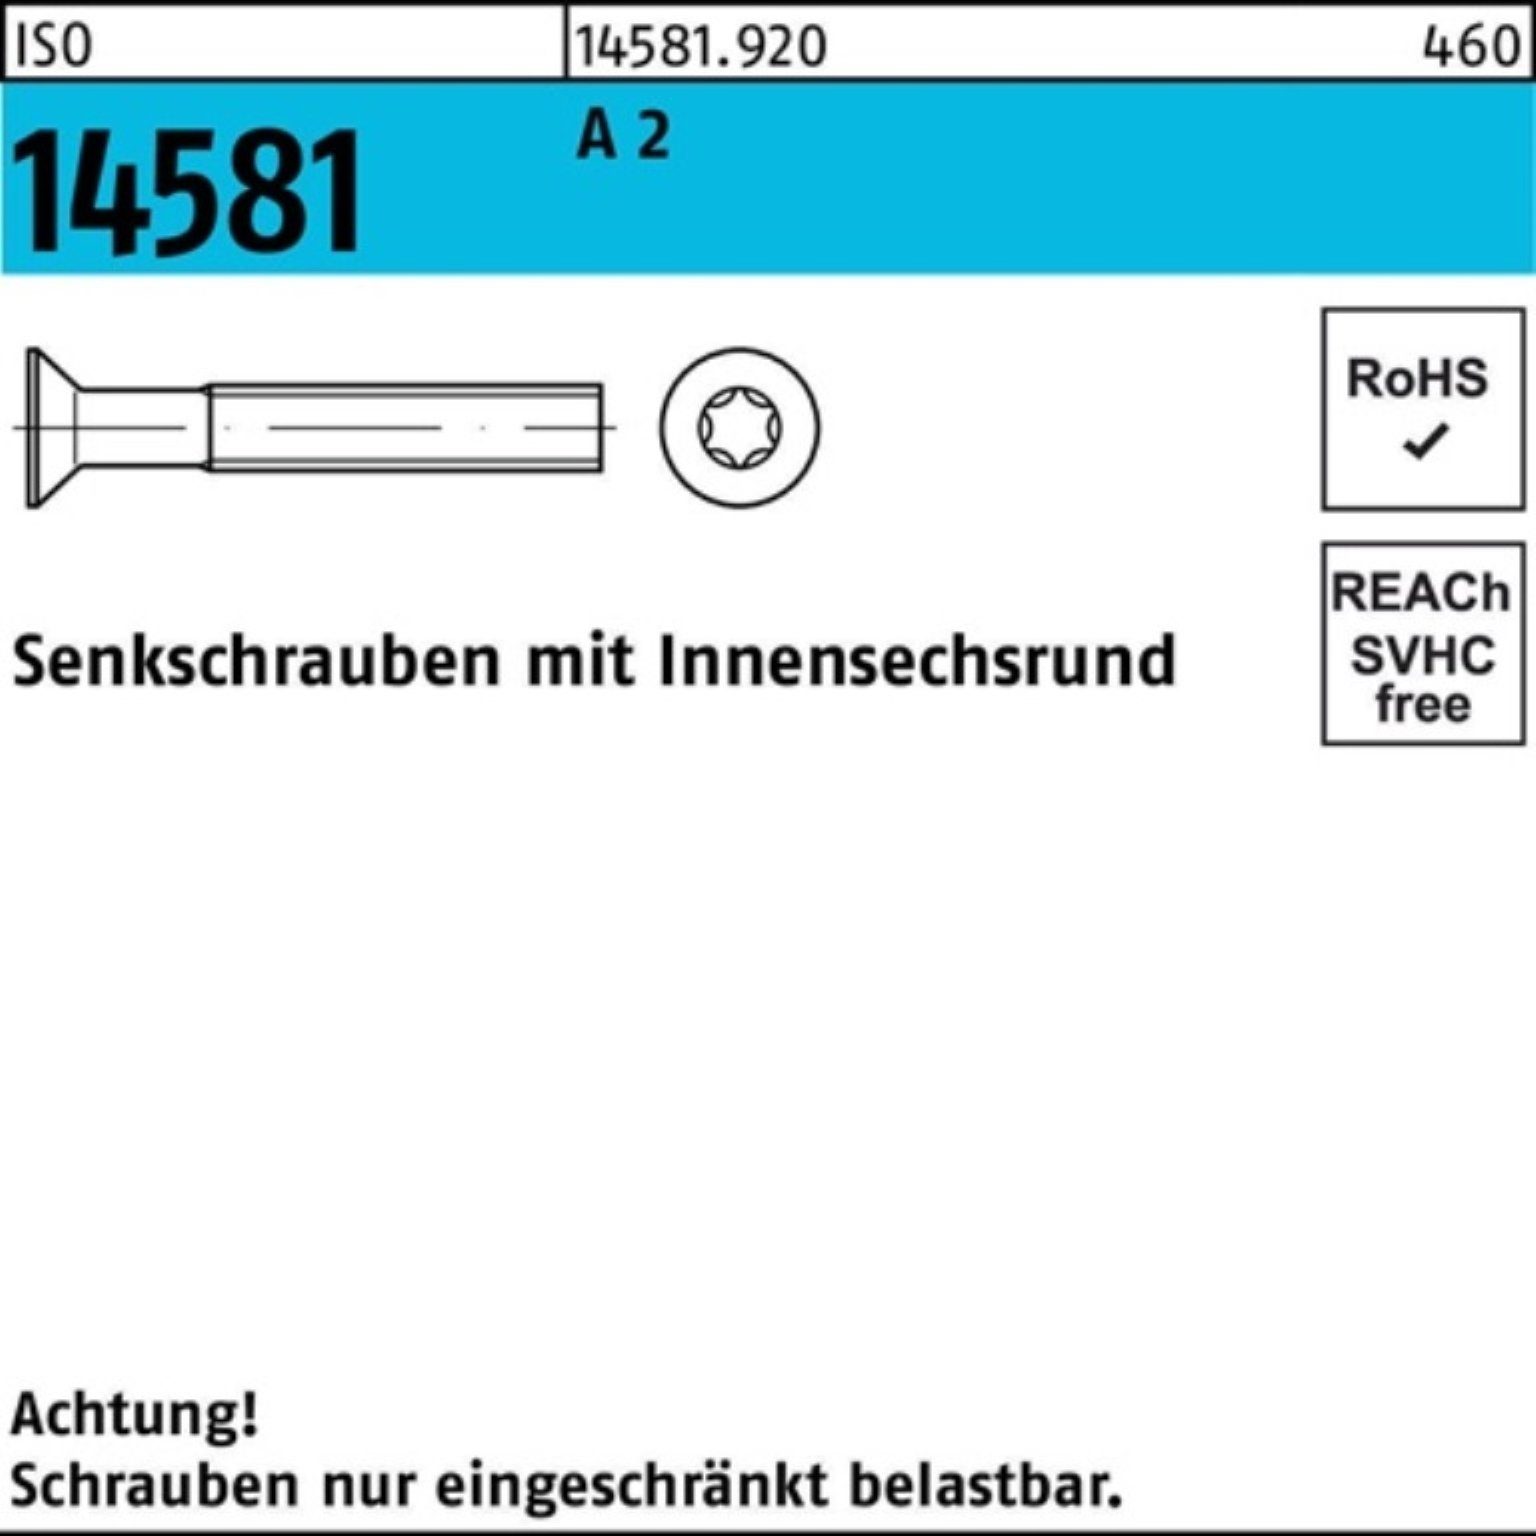 M2,5x 1000er Reyher 2 6 14581 1000 ISO Senkschraube A Stück Pack ISO Senkschraube ISR T8